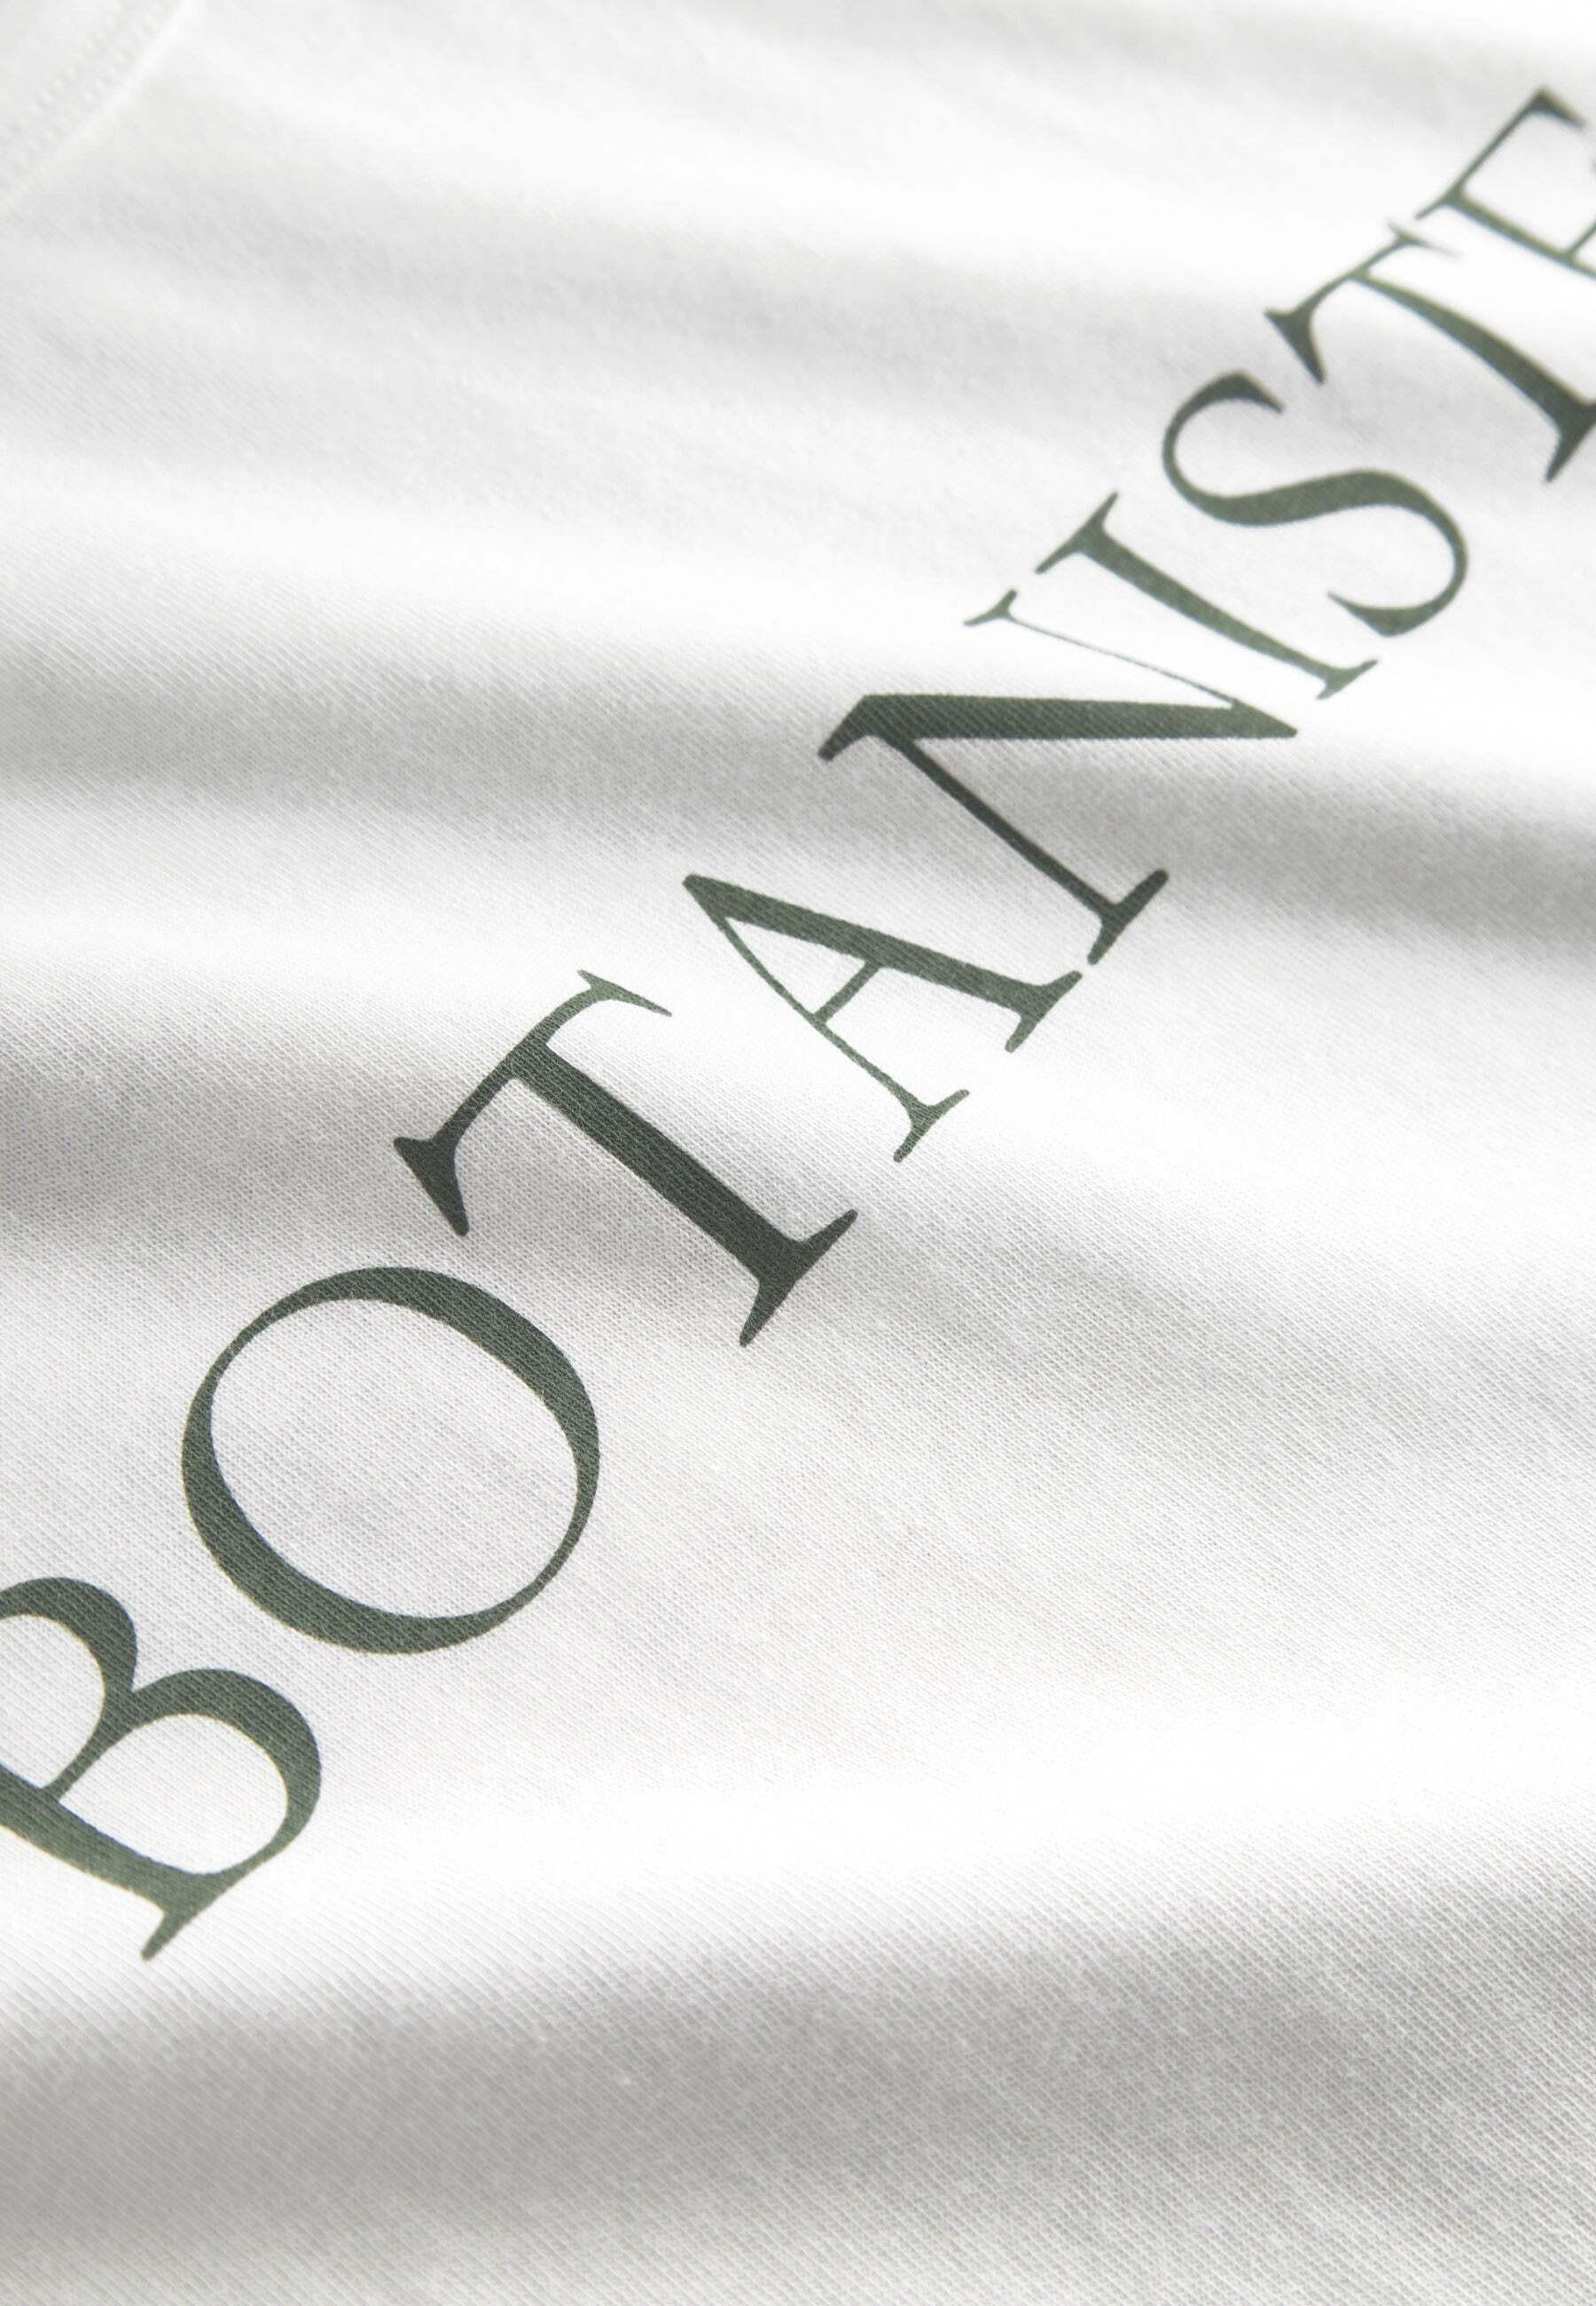 Colours & Sons  T-Shirts Botaniste 